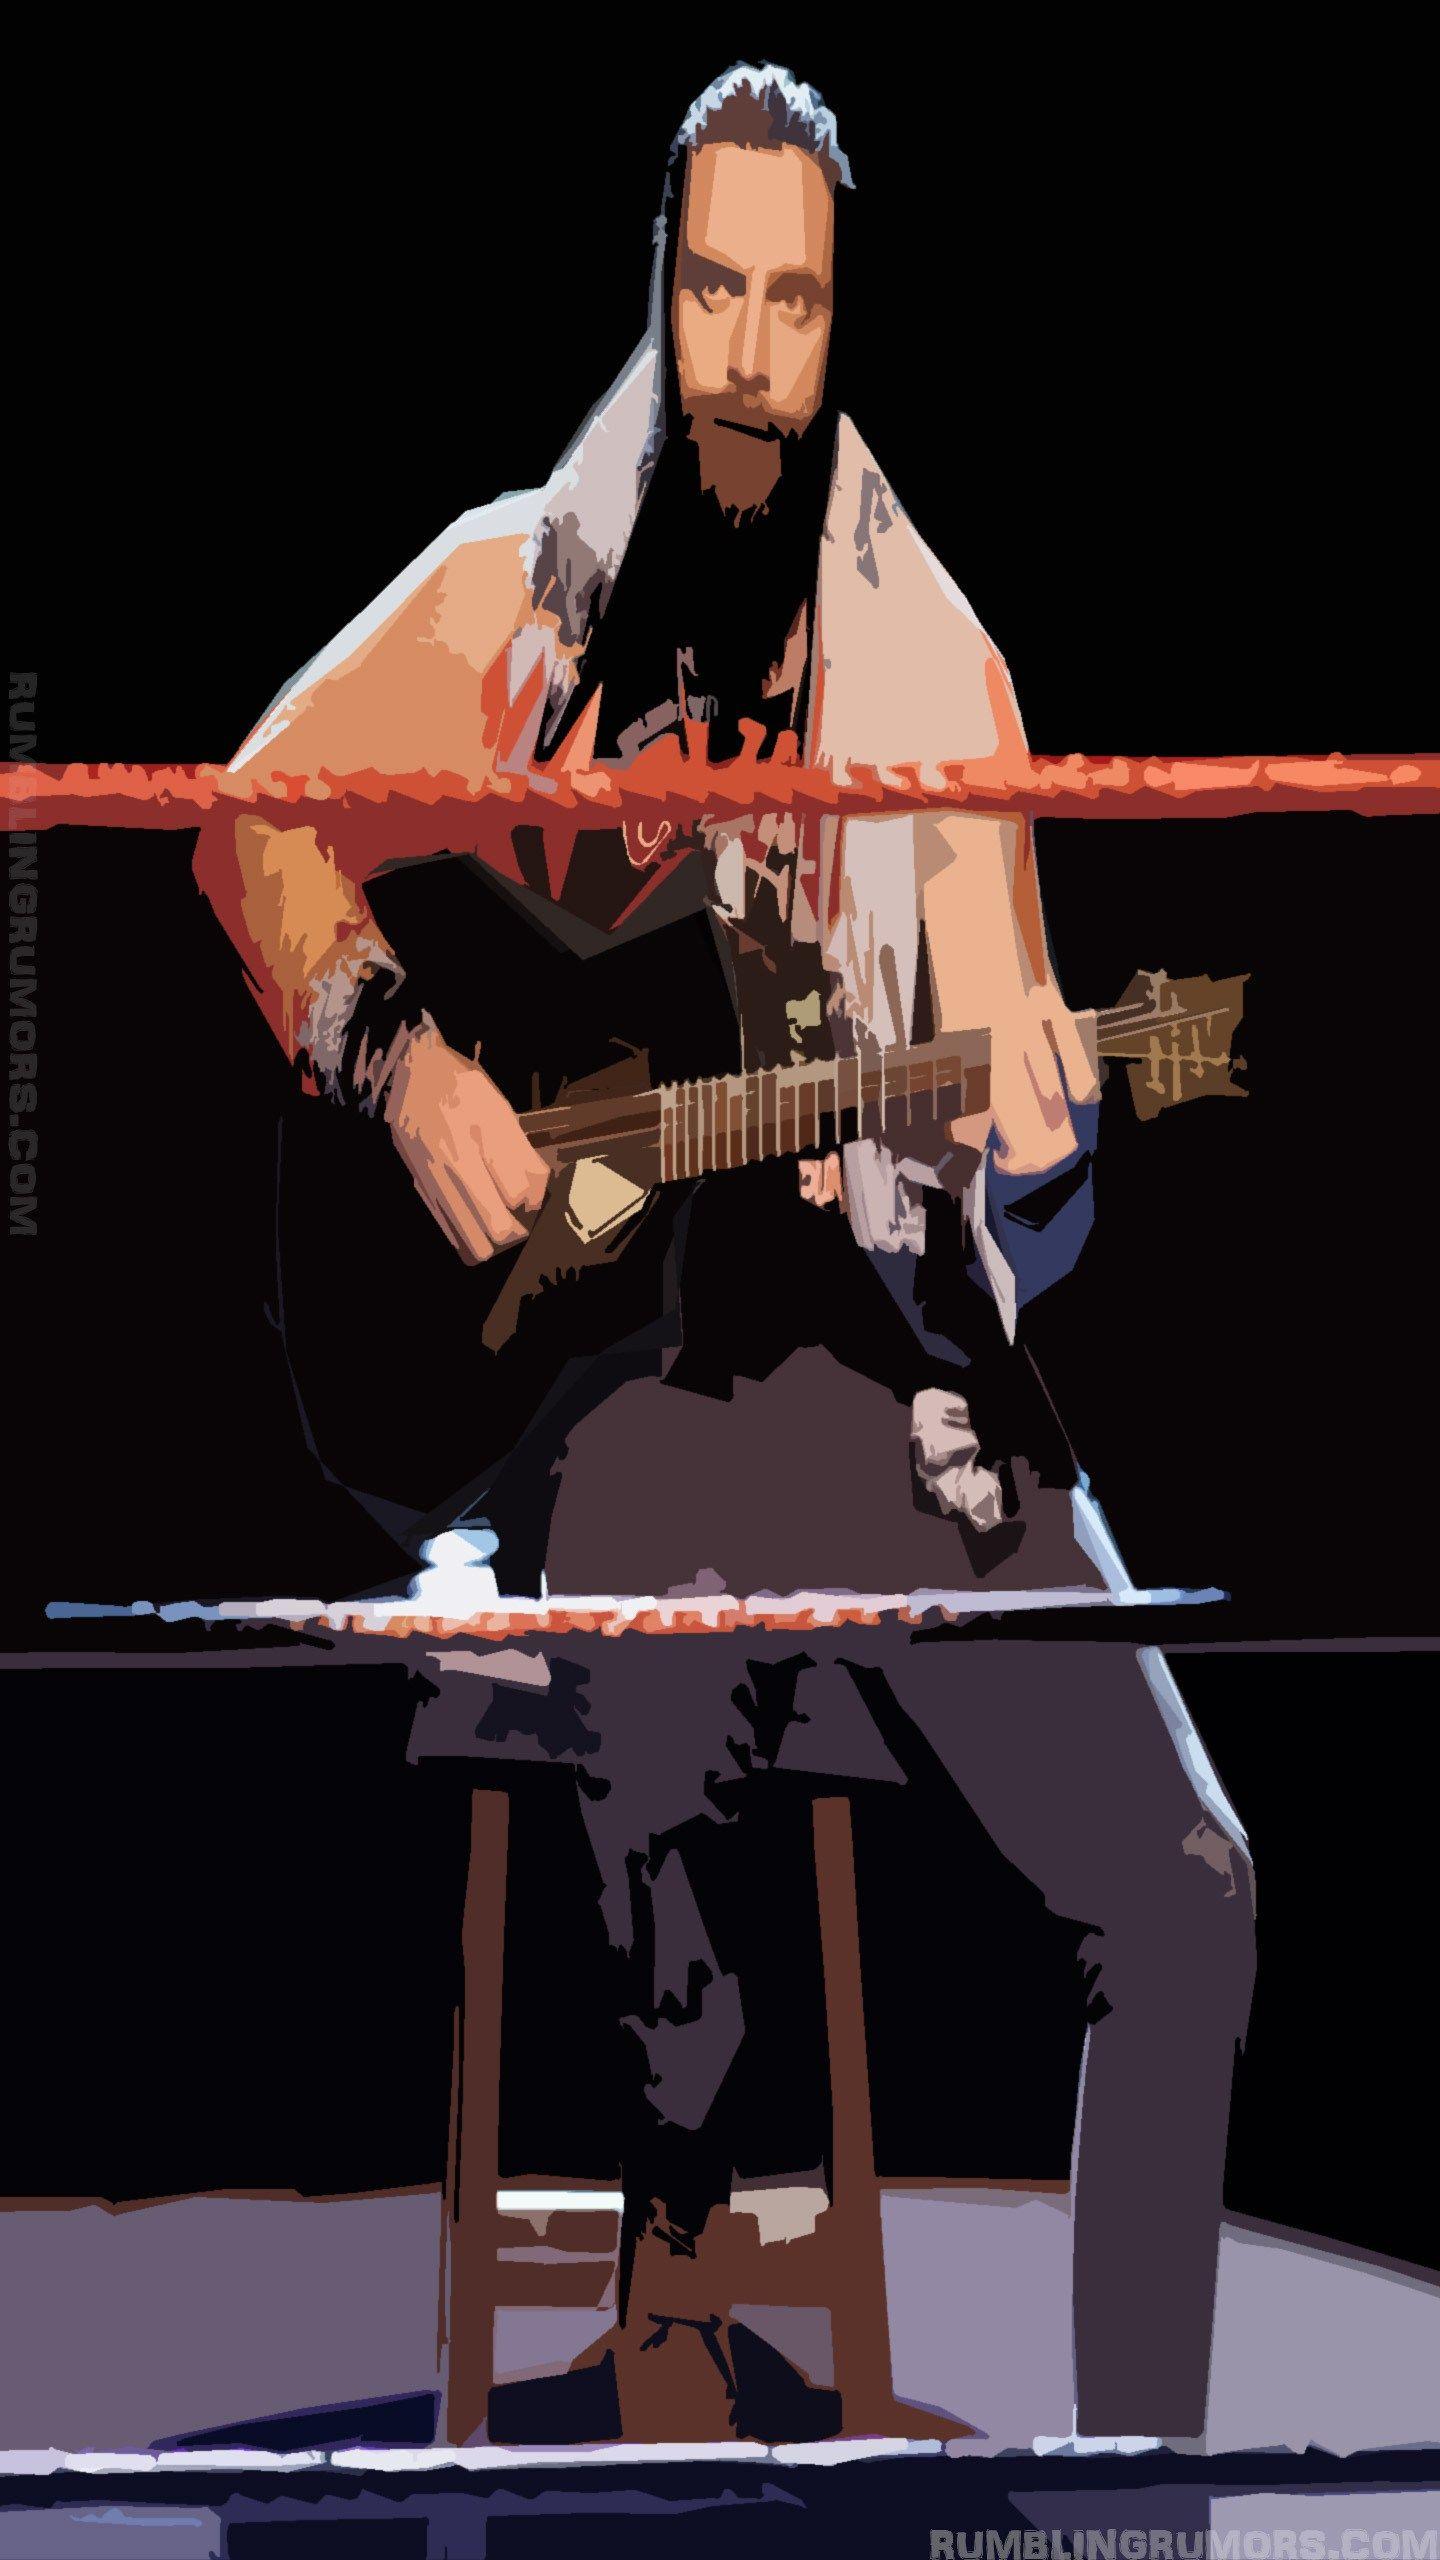 Elias WWE HD Wallpaper. Wwe picture, Wwe, Nxt divas